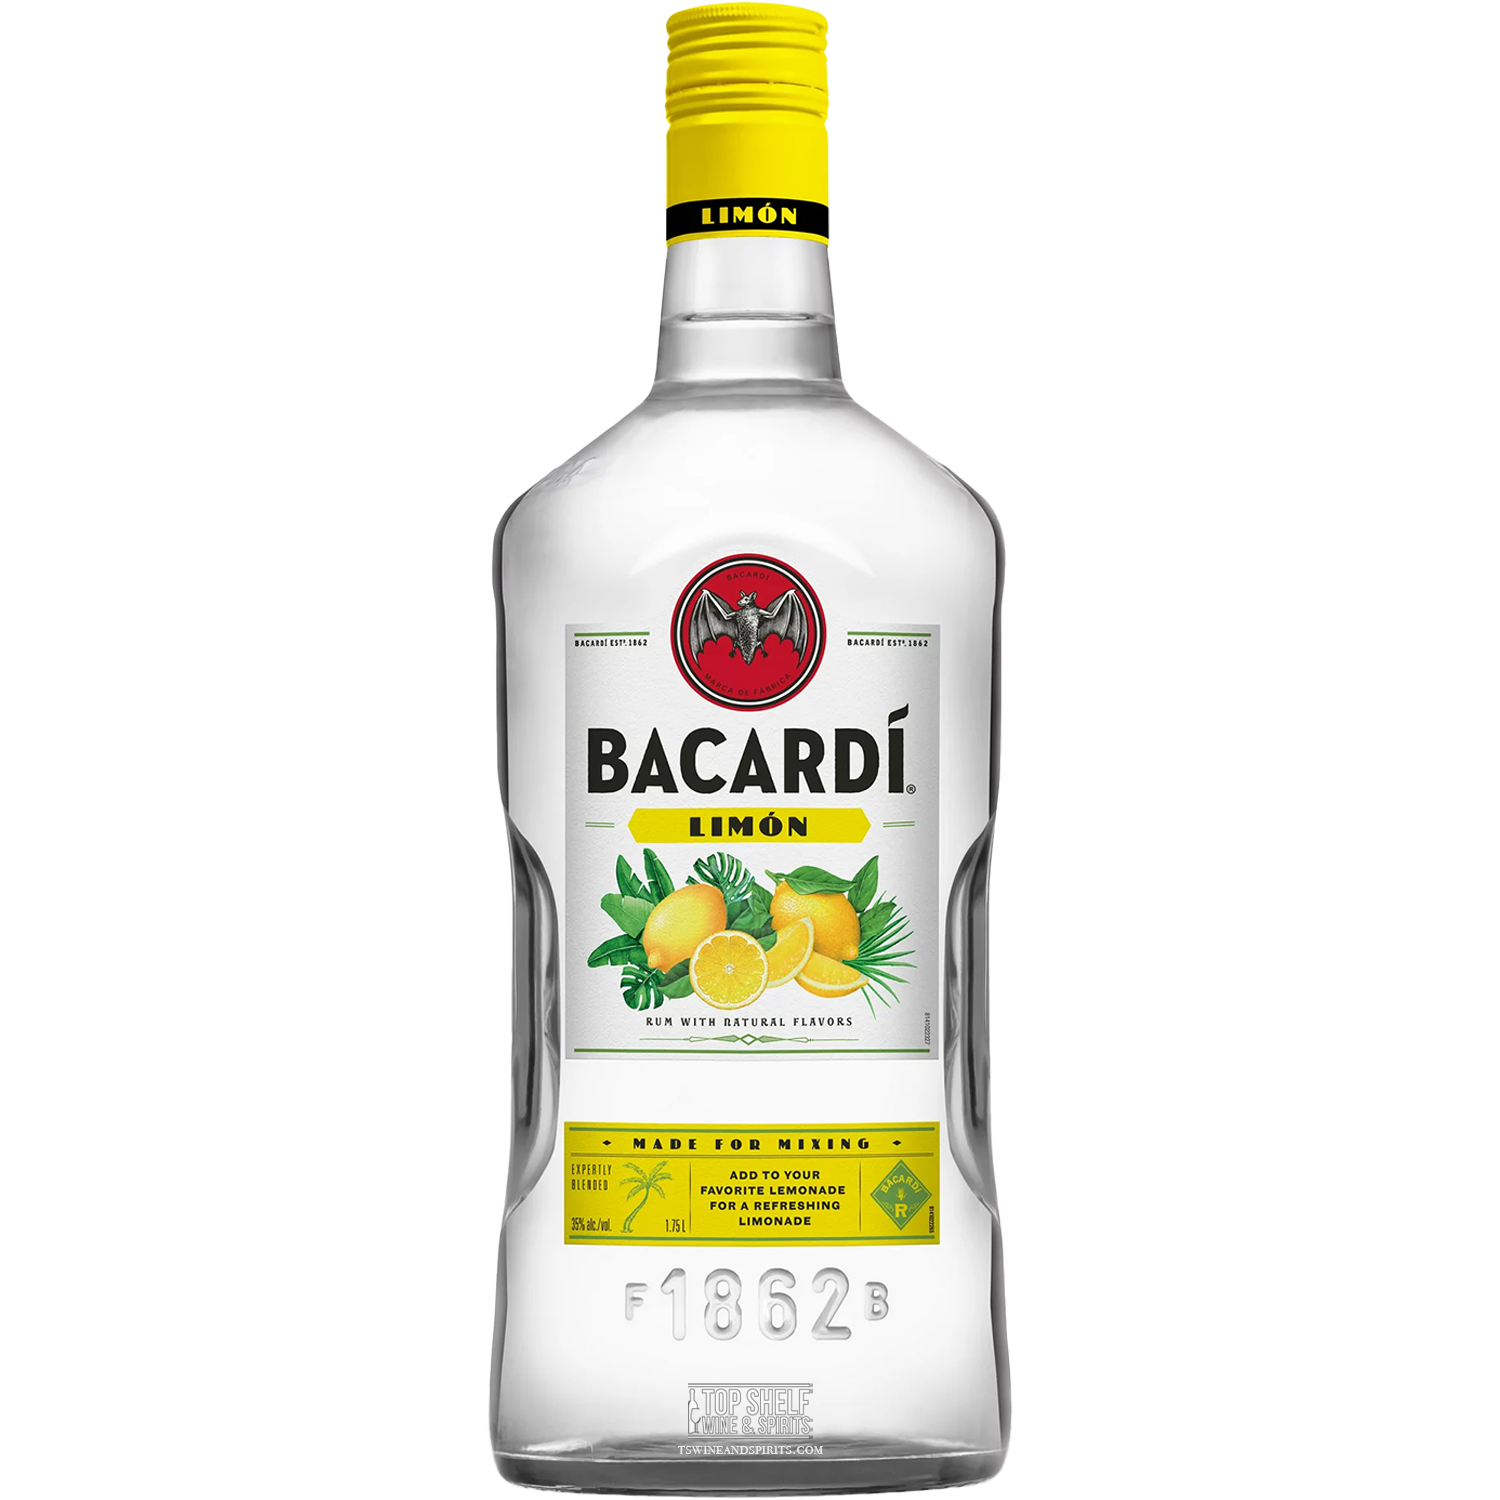 Bacardí Limón Rum 1.75L